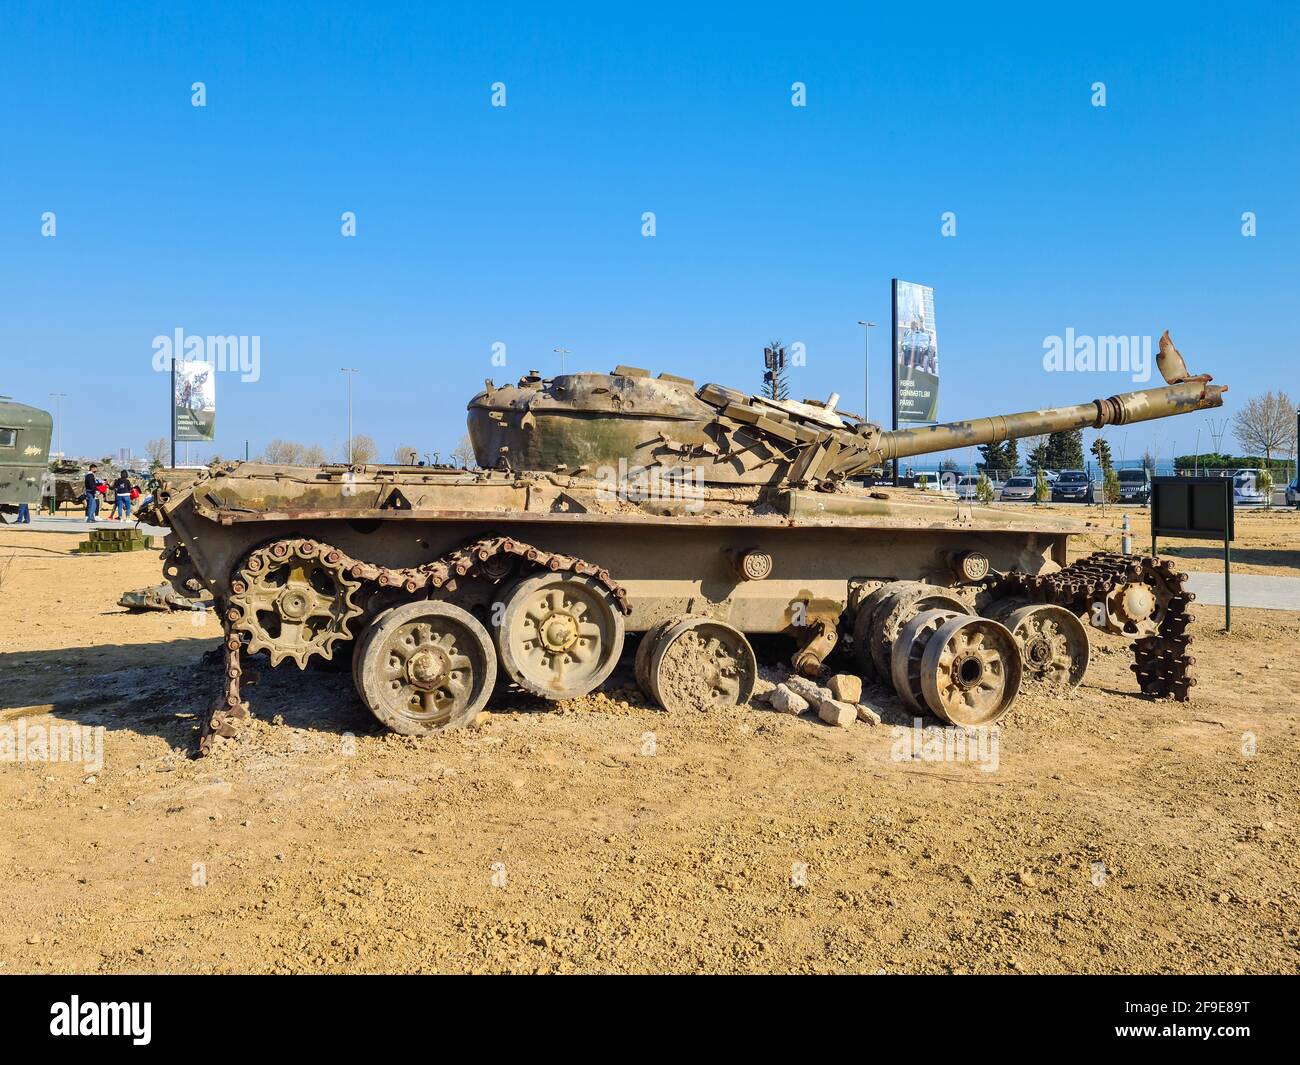 T-72 principaux chars de bataille soviétiques/russes qui sont entrés en production pour la première fois en 1971 - Bakou, Azerbaïdjan, 04-16-2021 Banque D'Images